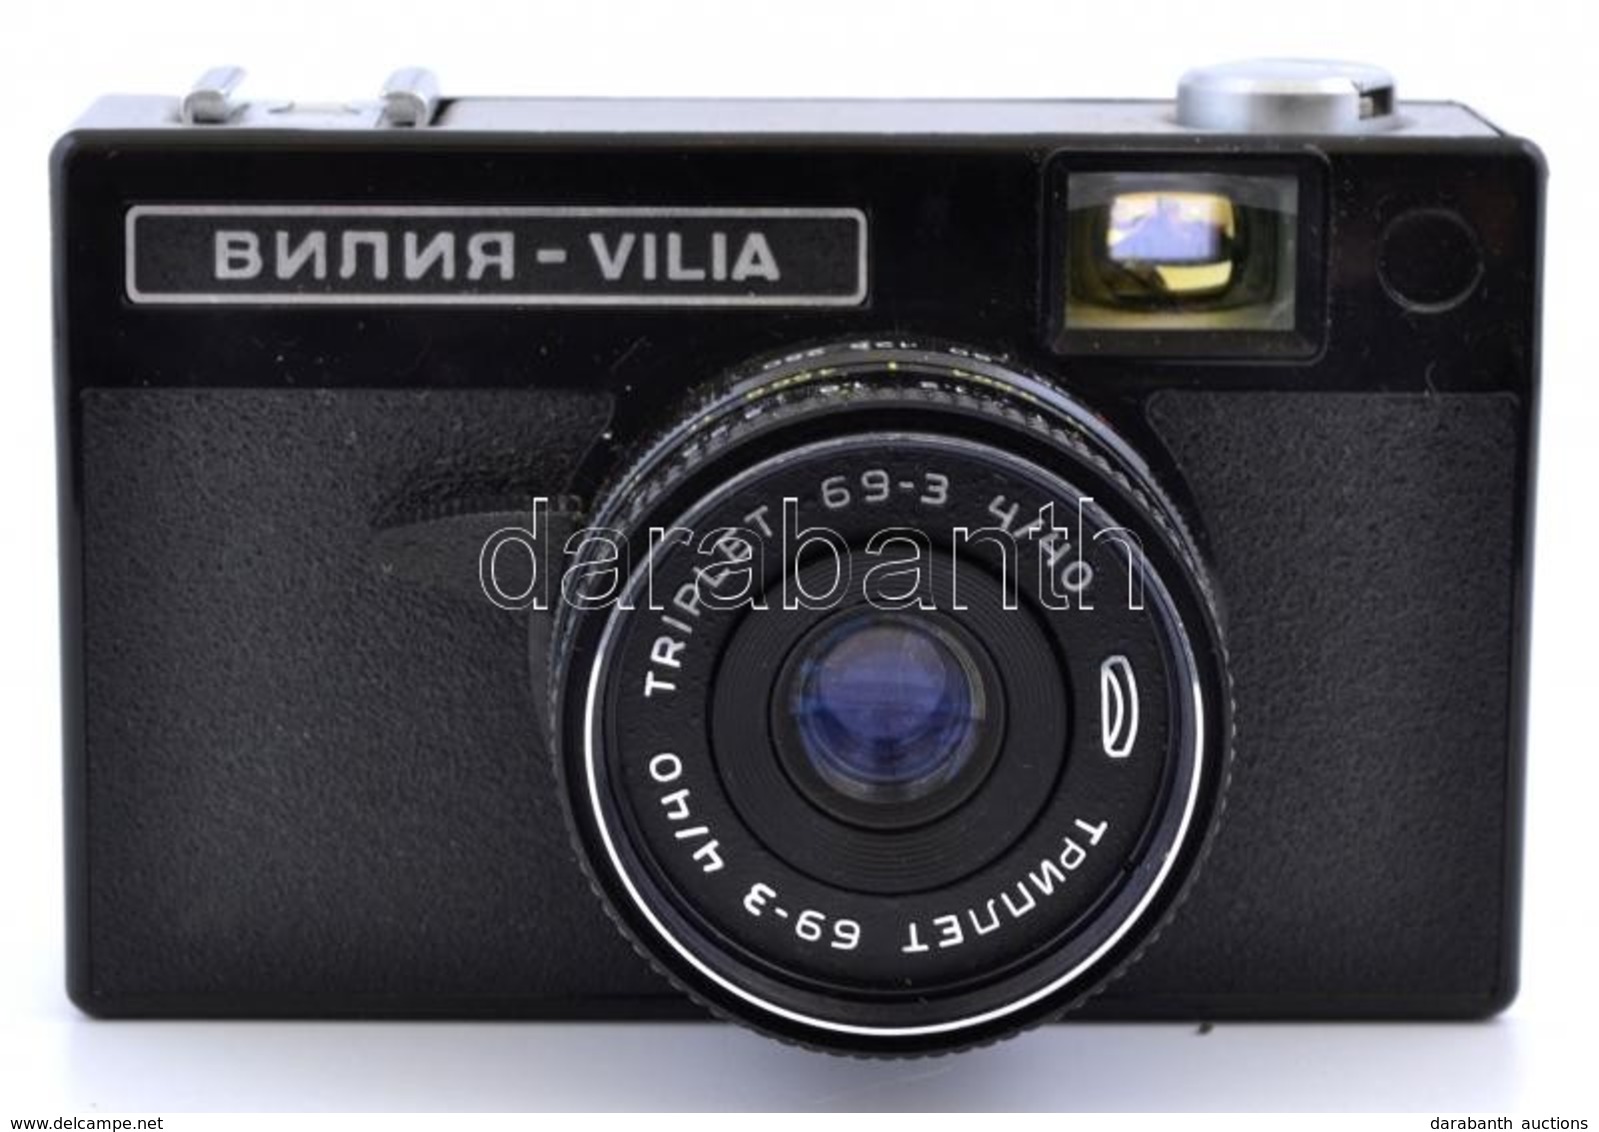 Belomo Vilia Fényképezőgép Triplet 69-3 4/40 Objektívvel, Eredeti Tokjában, Jó állapotban / Vintage Soviet 35mm Film Cam - Cameras